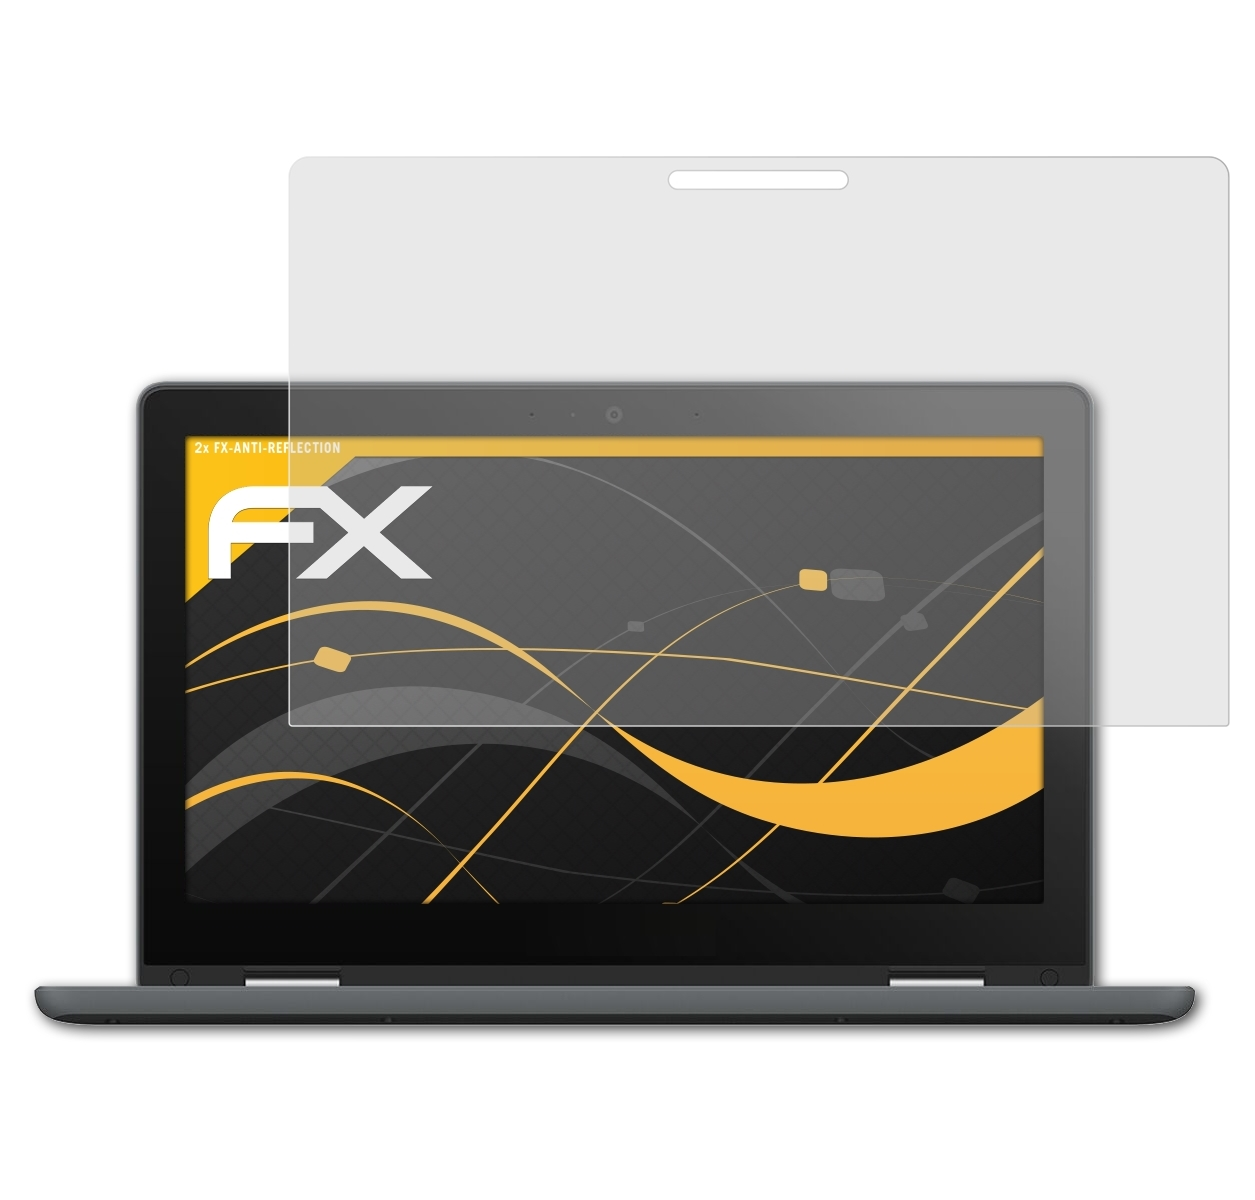 ATFOLIX 2x FX-Antireflex Displayschutz(für Asus (C214MA)) Flip C214 Chromebook